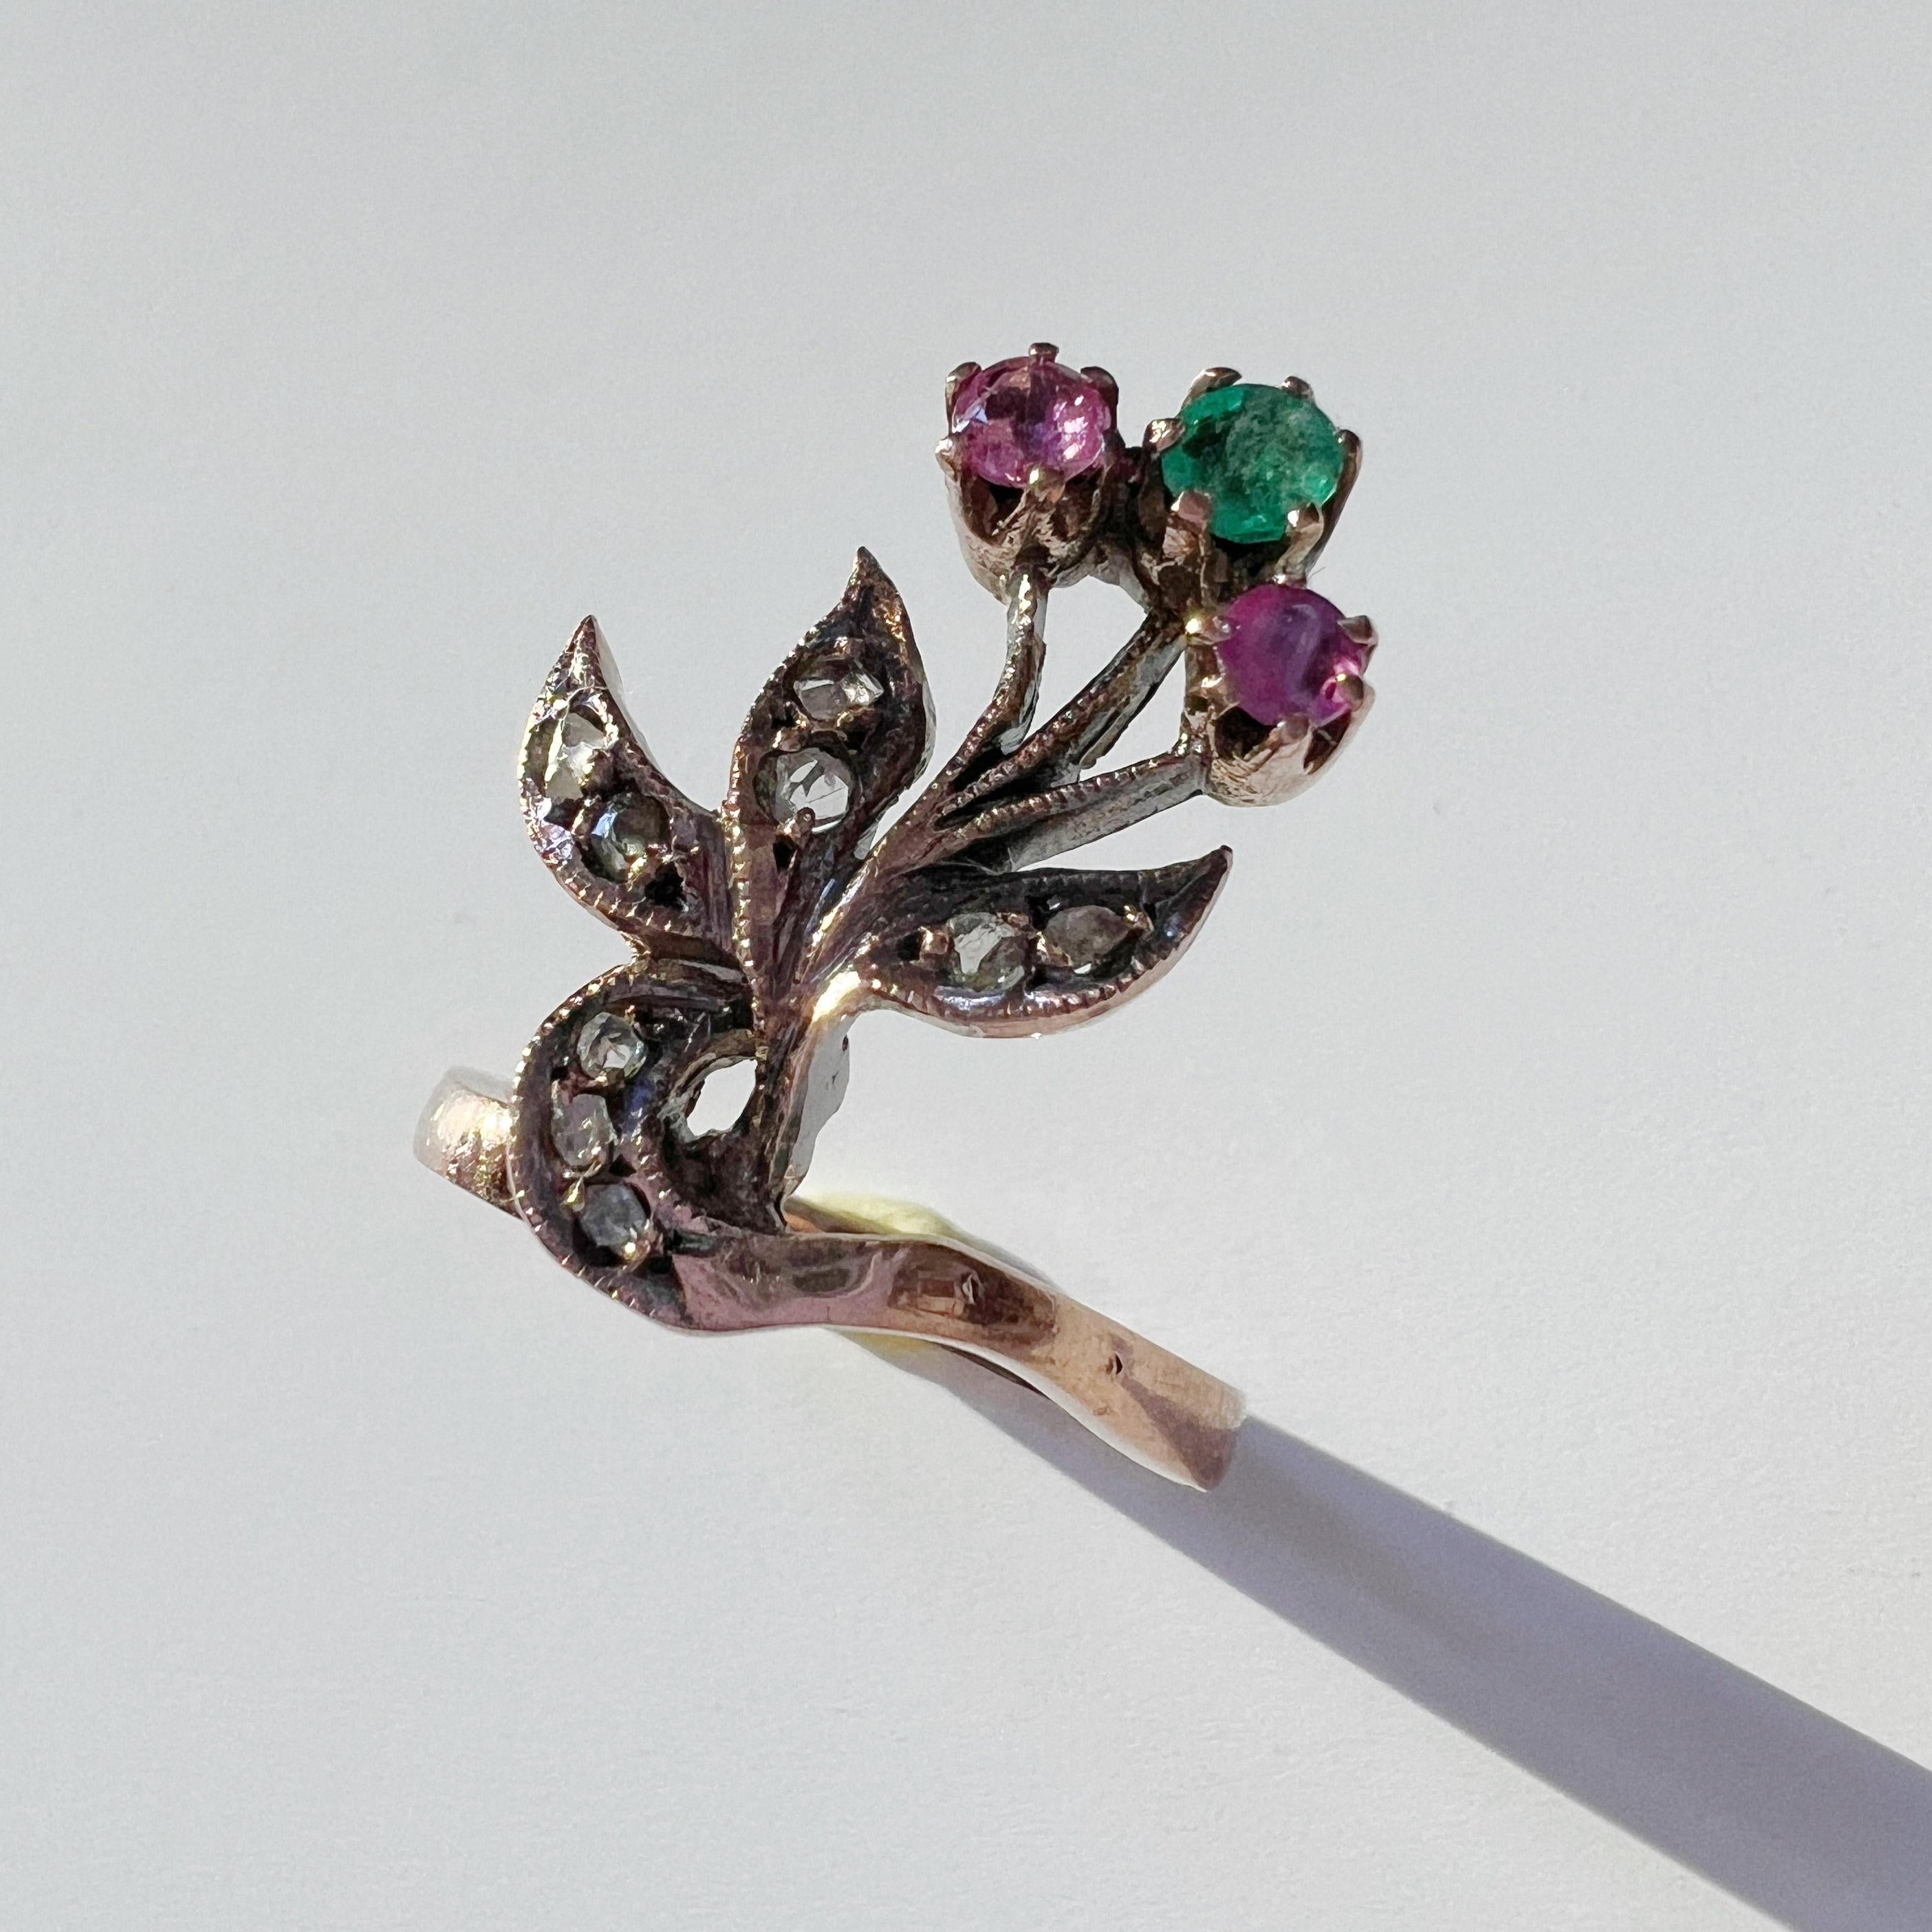 Zum Verkauf steht ein antiker 9K Goldring aus der Zeit des Jugendstils. Dieser Ring zeigt ein süßes Blumenbouquet, das aus einem facettierten Smaragd und zwei bezaubernden facettierten Rubinen gefertigt ist.

Die zarten Blätter dieser botanischen